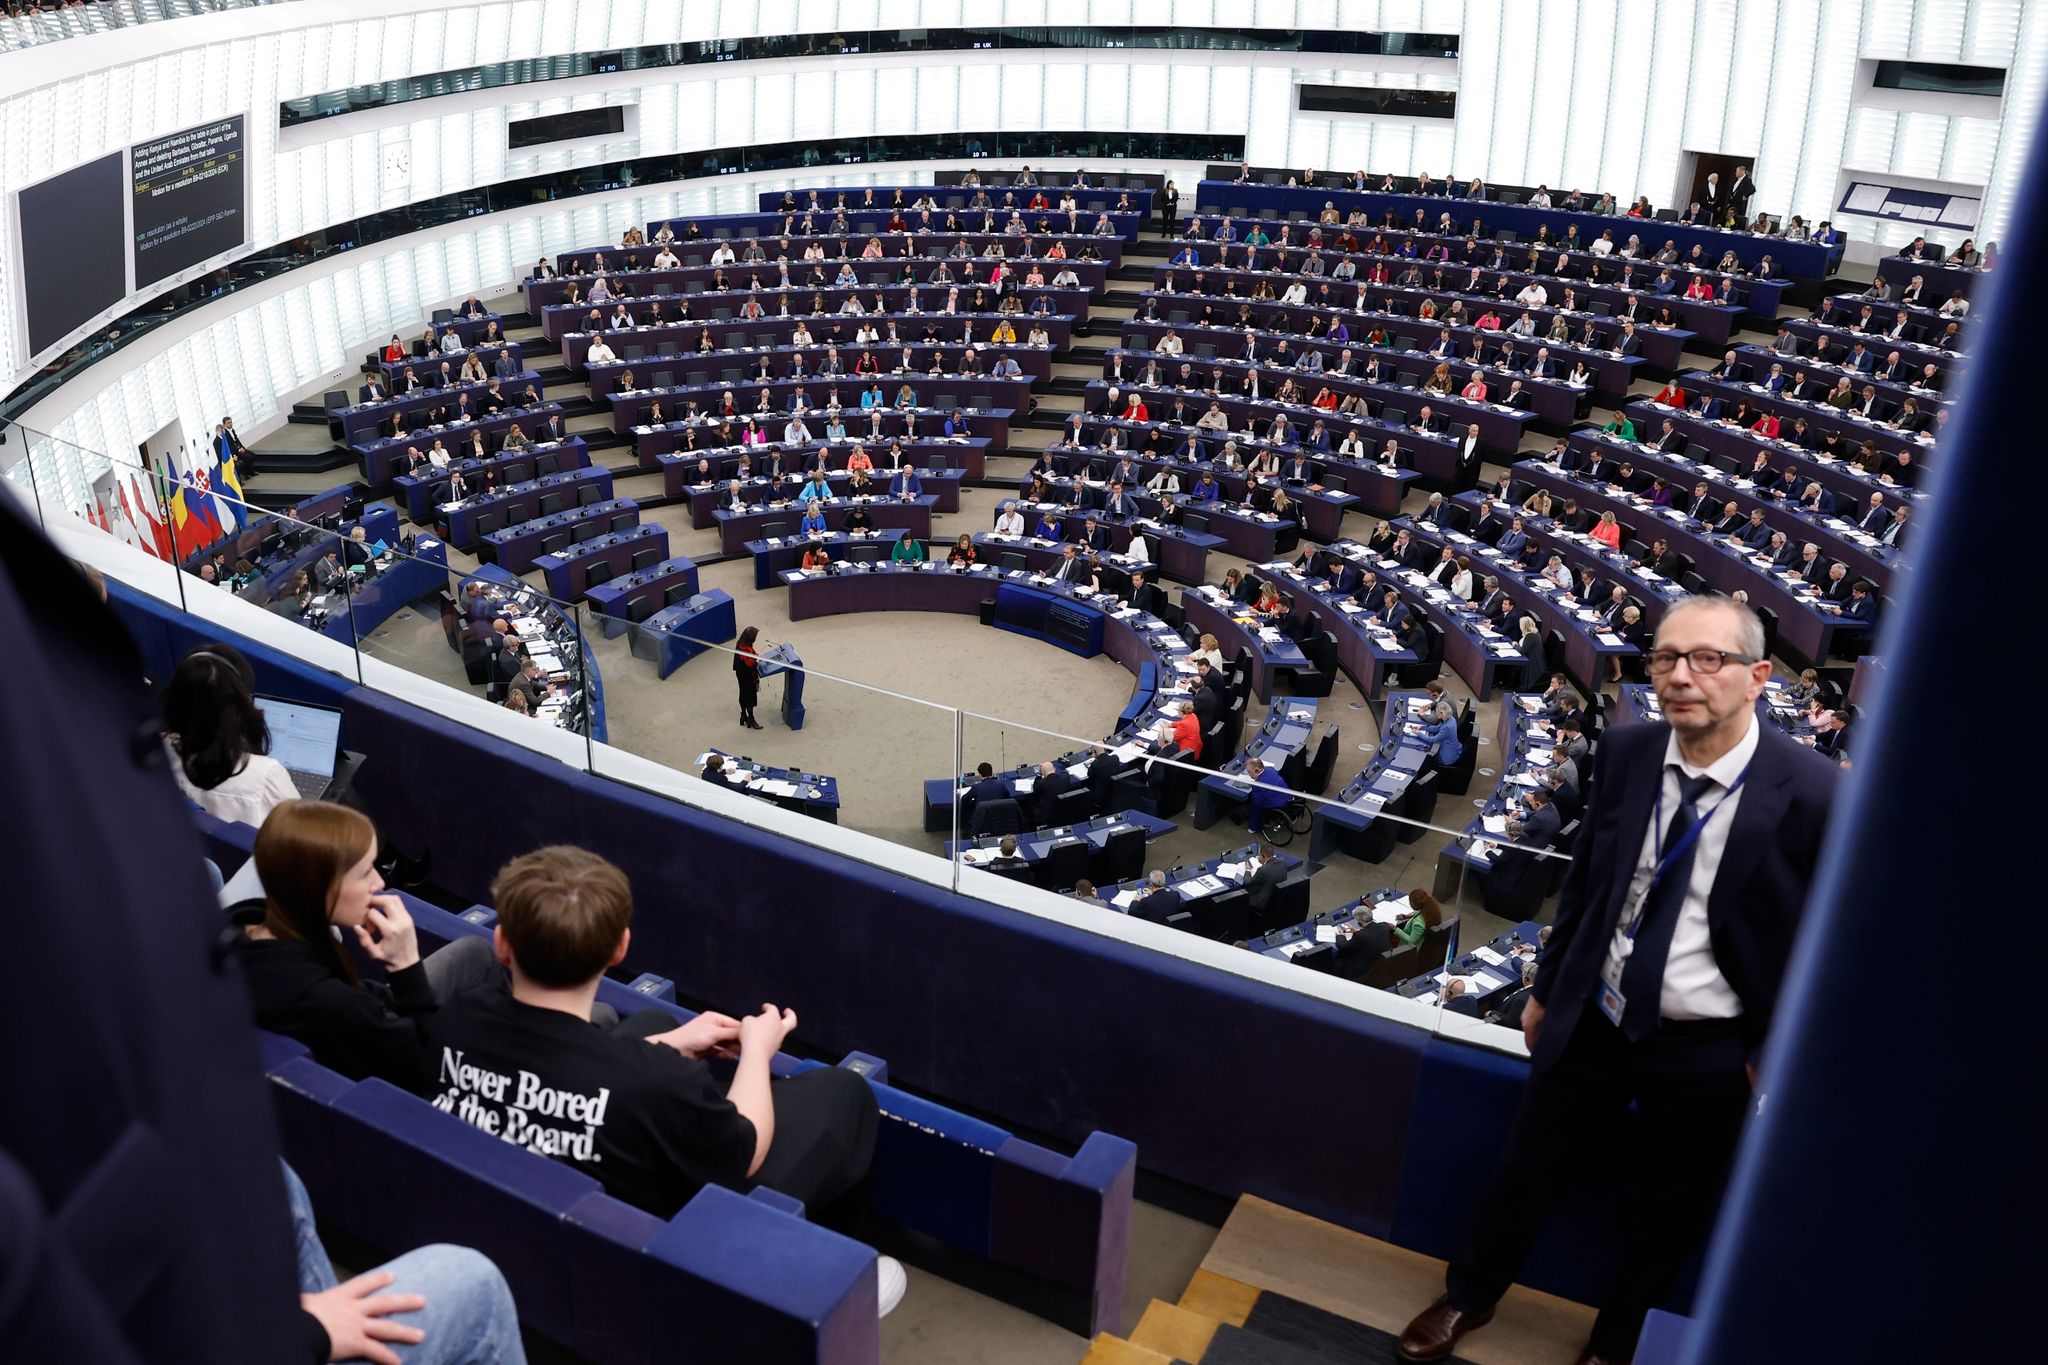 europaparlament gibt grünes licht für neue eu-schuldenregeln